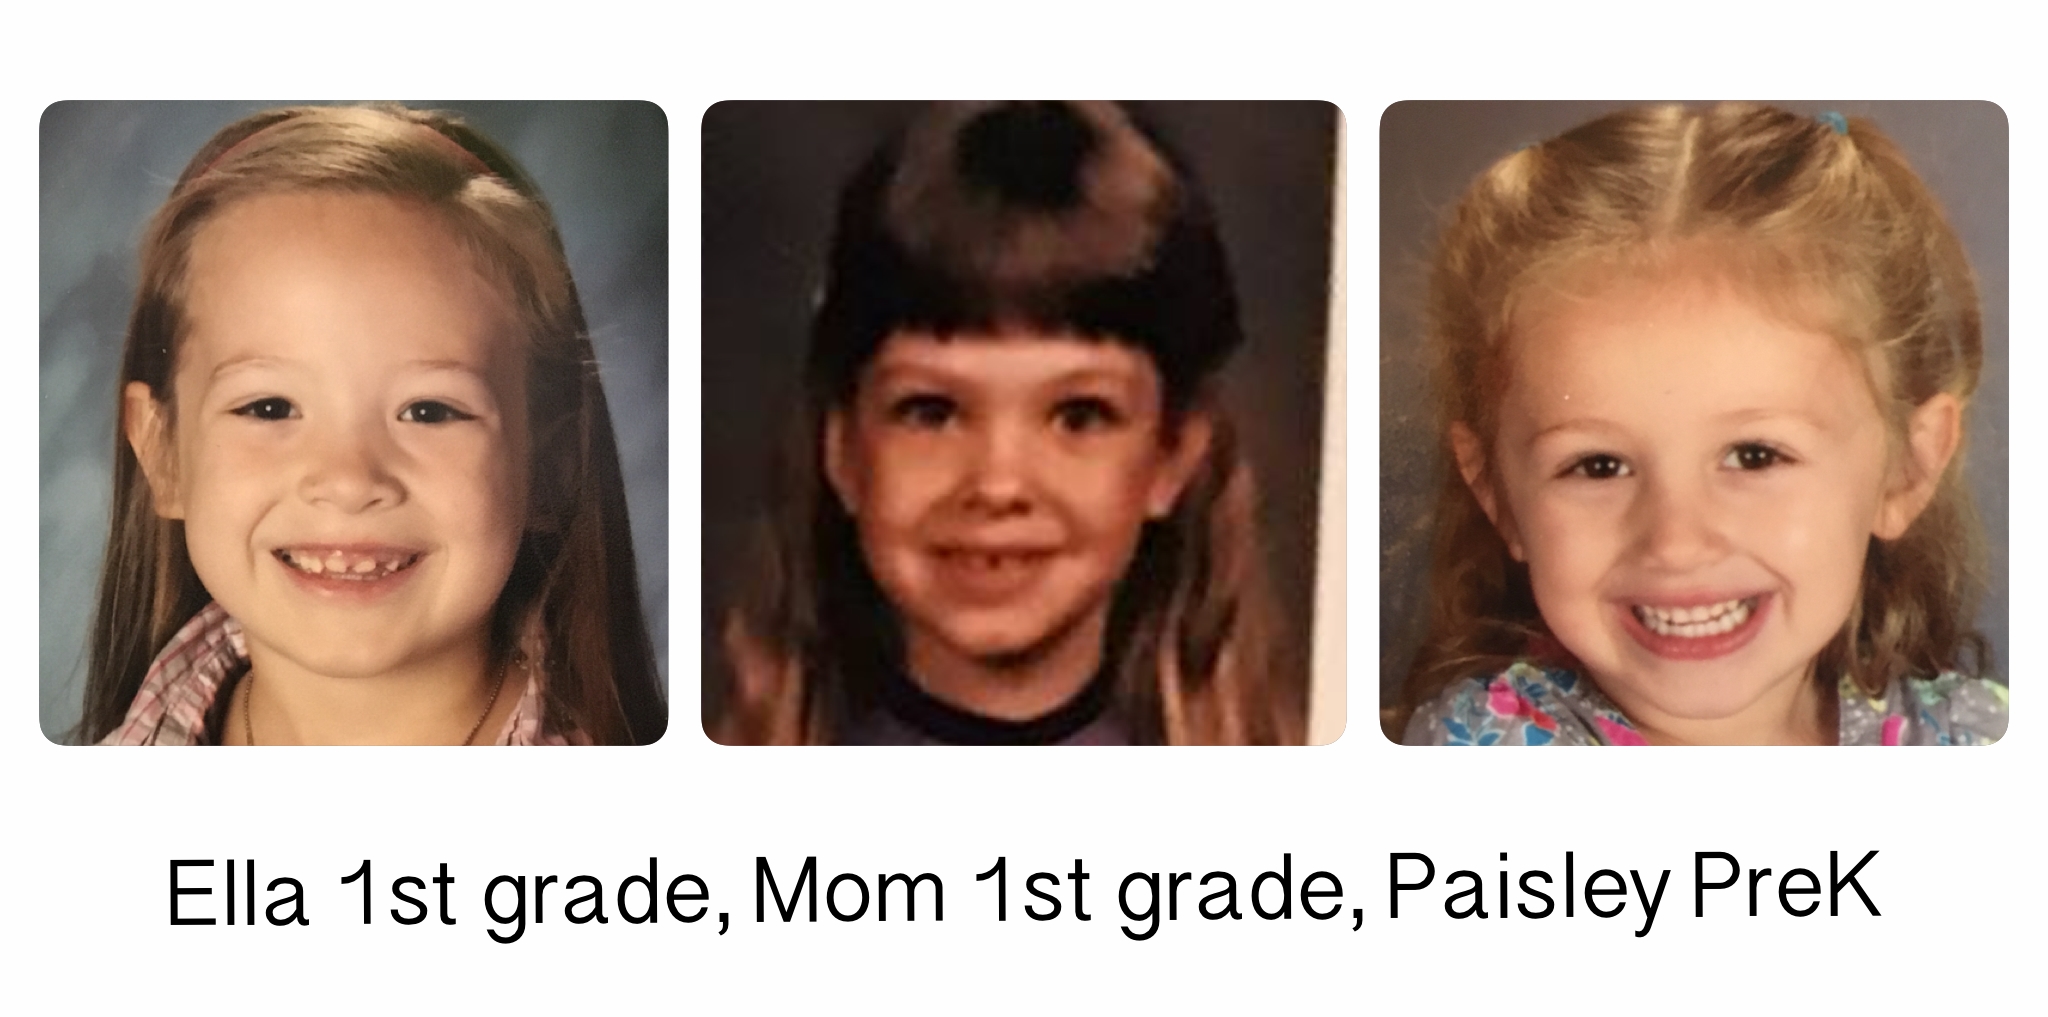 Ella 2016-2017 1st grade, Mom 1988-89 1st grade, Paisley 2016-2017 PrK school year.